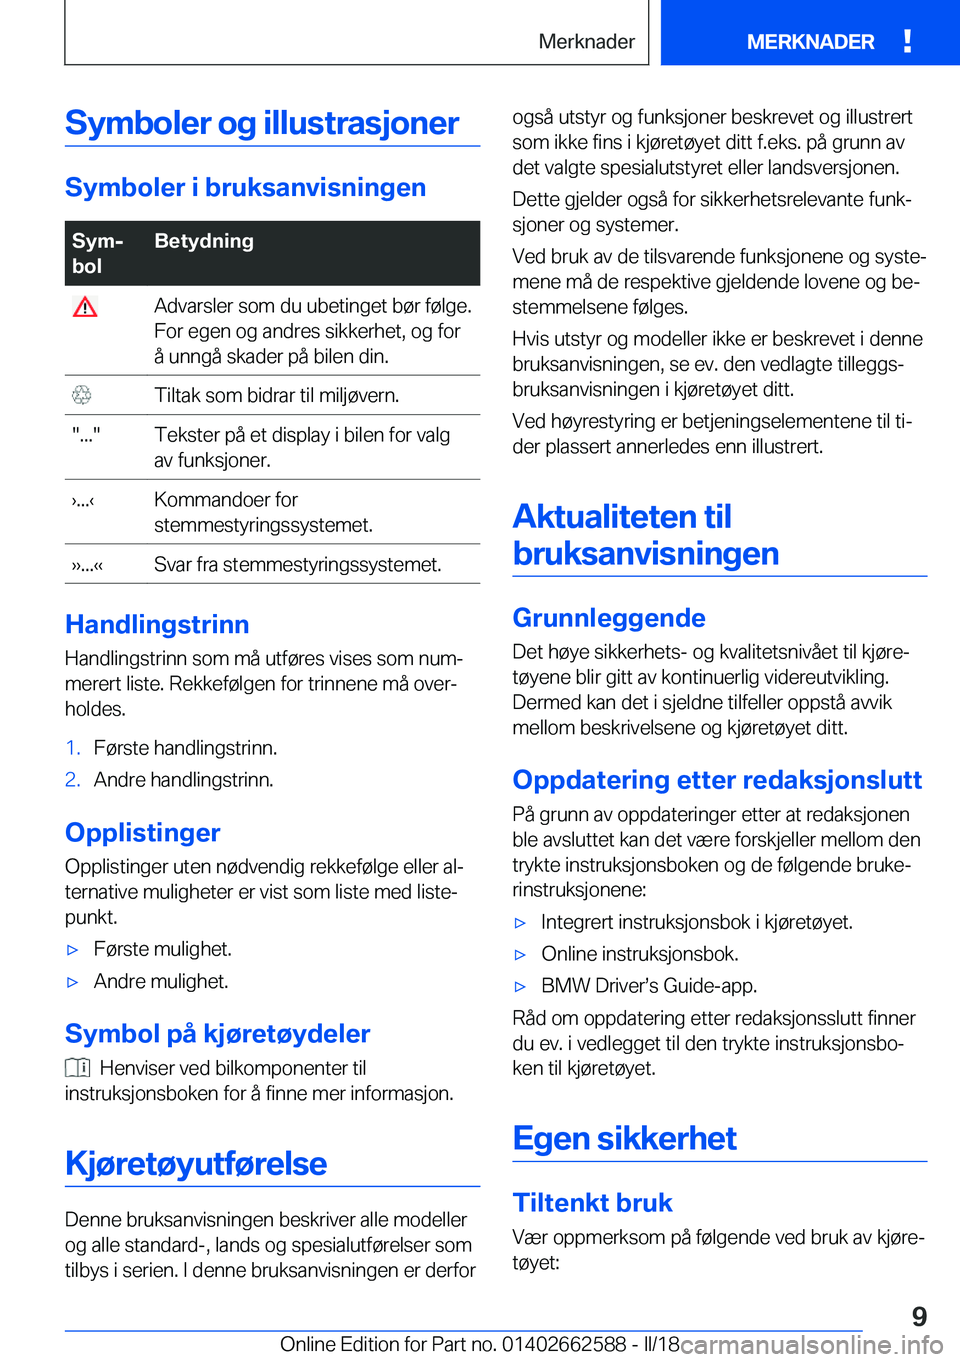 BMW M2 2018  InstruksjonsbØker (in Norwegian) �S�Z�m�b�o�l�e�r��o�g��i�l�l�u�s�t�r�a�s�j�o�n�e�r
�S�Z�m�b�o�l�e�r��i��b�r�u�k�s�a�n�v�i�s�n�i�n�g�e�n
�S�Z�mj
�b�o�l�B�e�t�Z�d�n�i�n�g� �A�d�v�a�r�s�l�e�r� �s�o�m� �d�u� �u�b�e�t�i�n�g�e�t� �b�